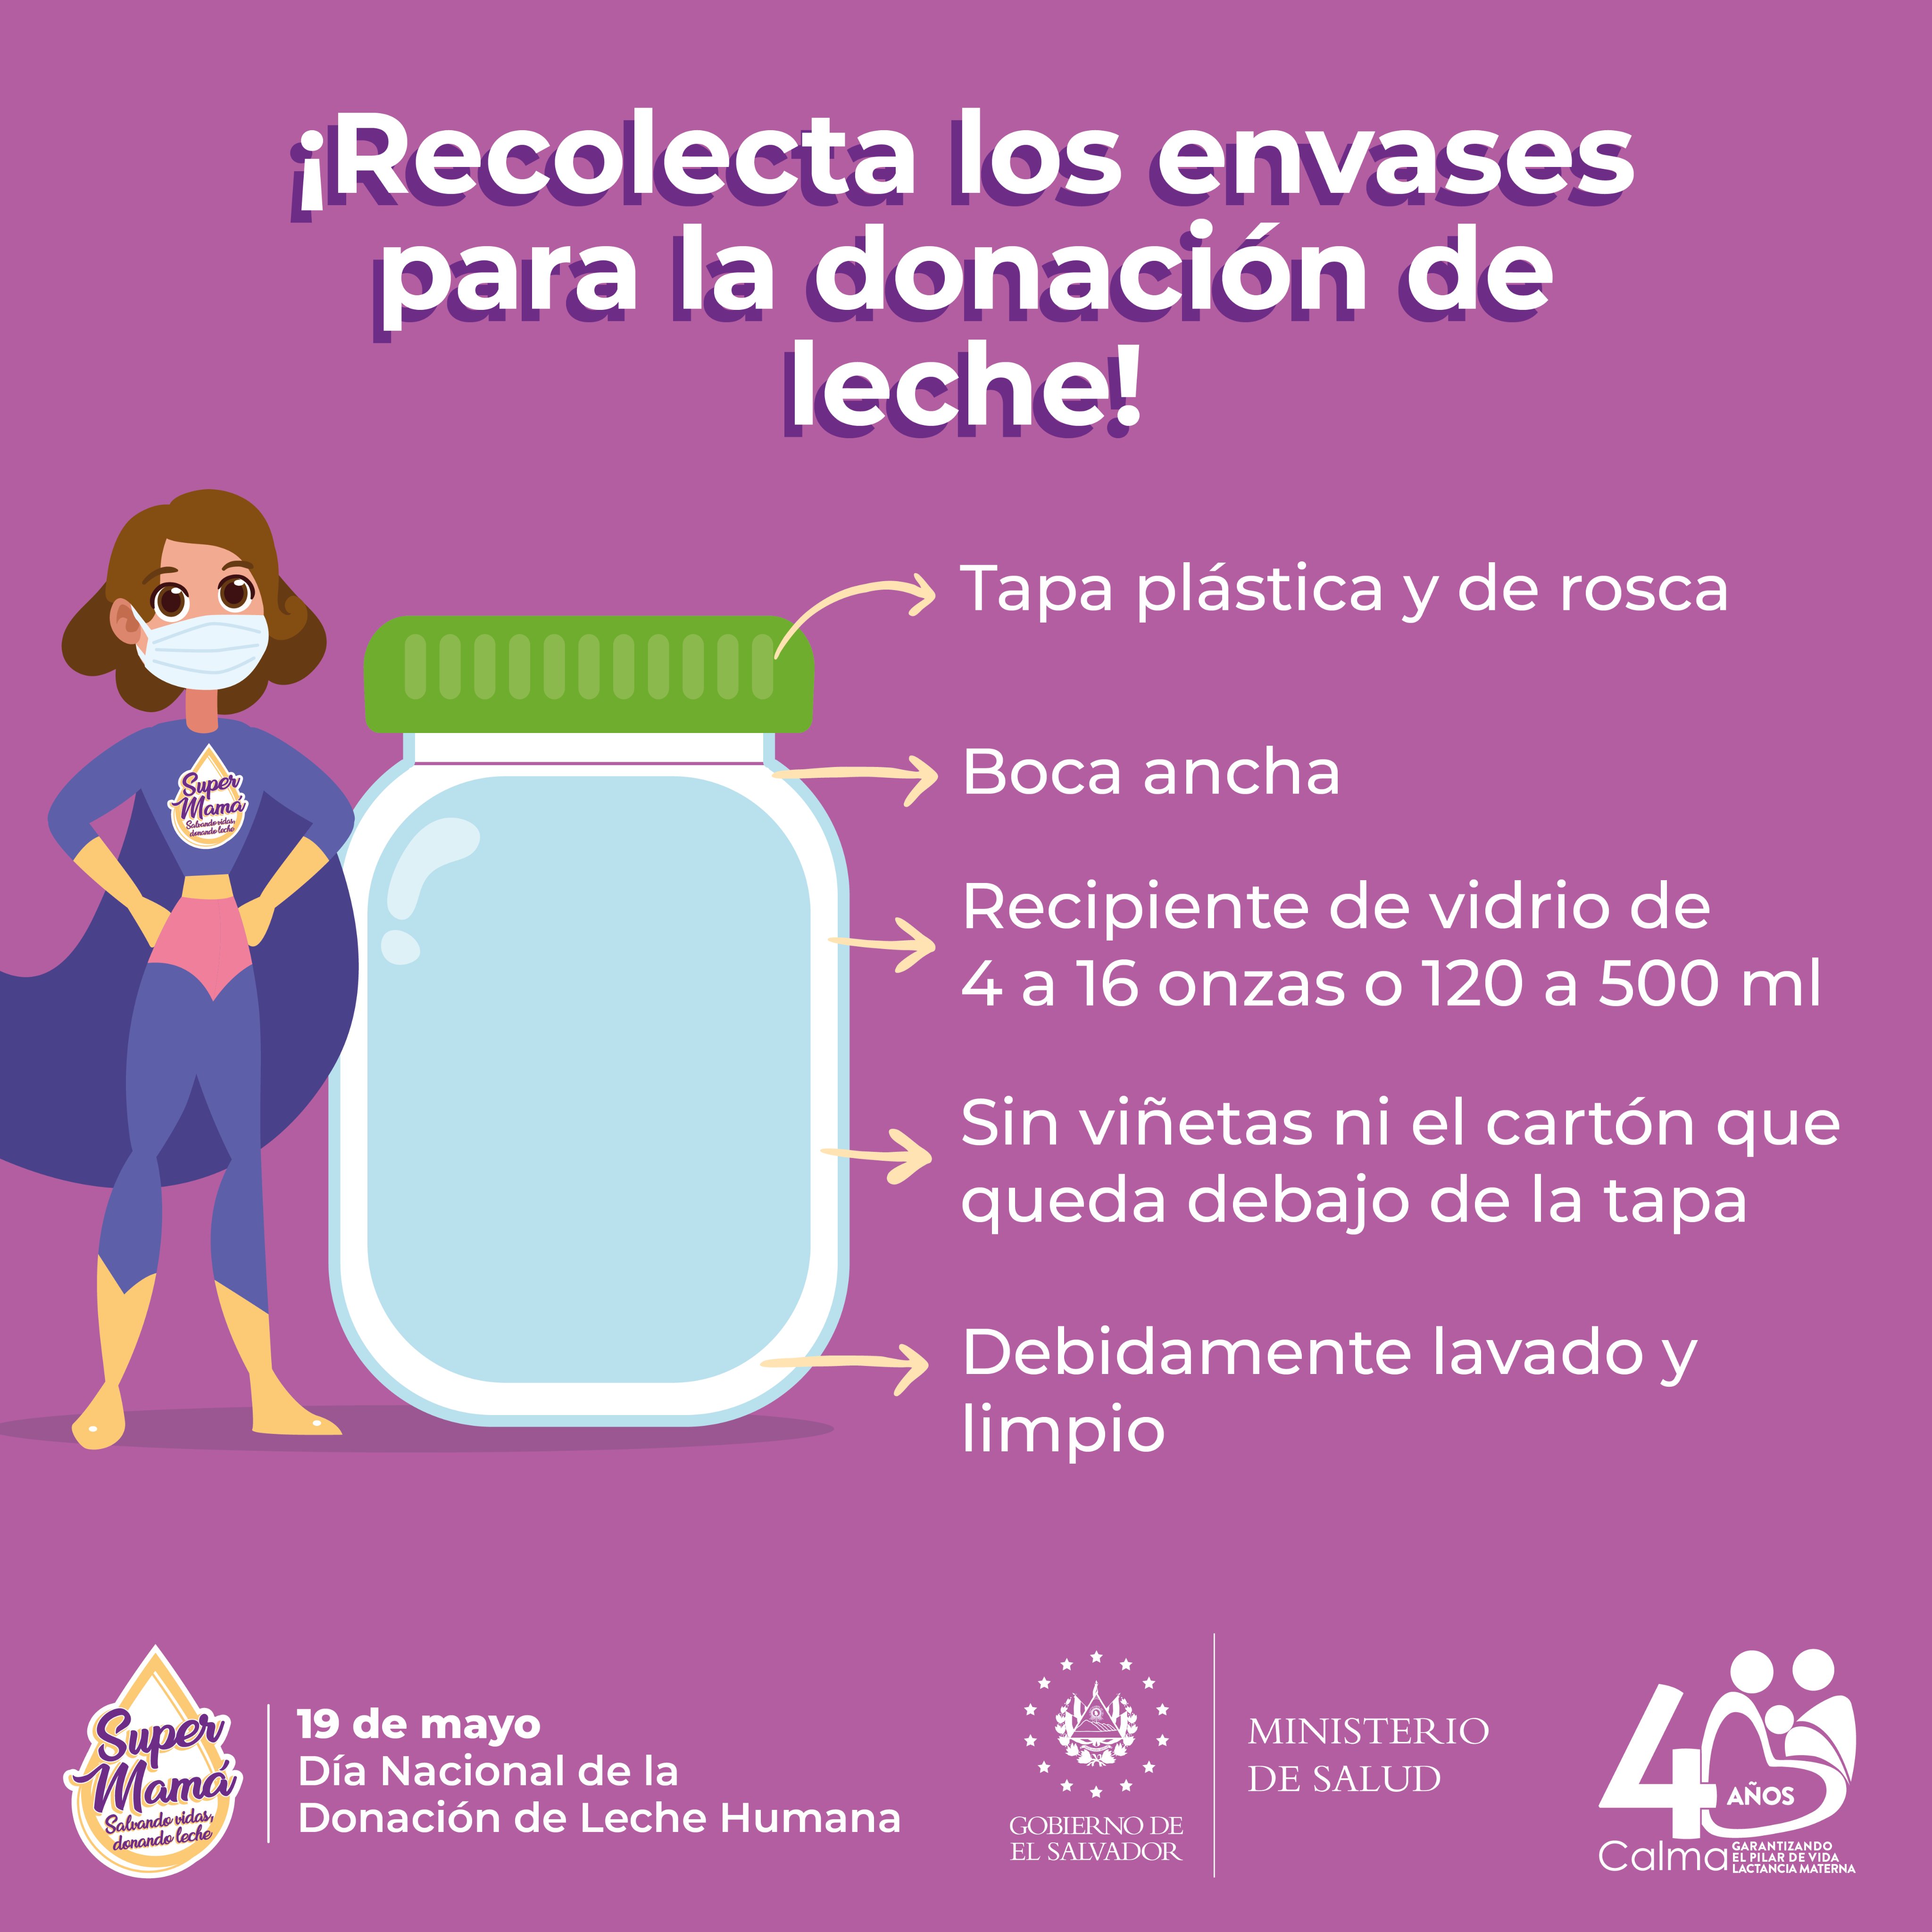 Calma El Salvador on Twitter: podemos ayudar a la donación de leche materna recolectando envases de vidrio que cumplan las siguientes características. Estos envases utilizados almacenar y pasteurizar la